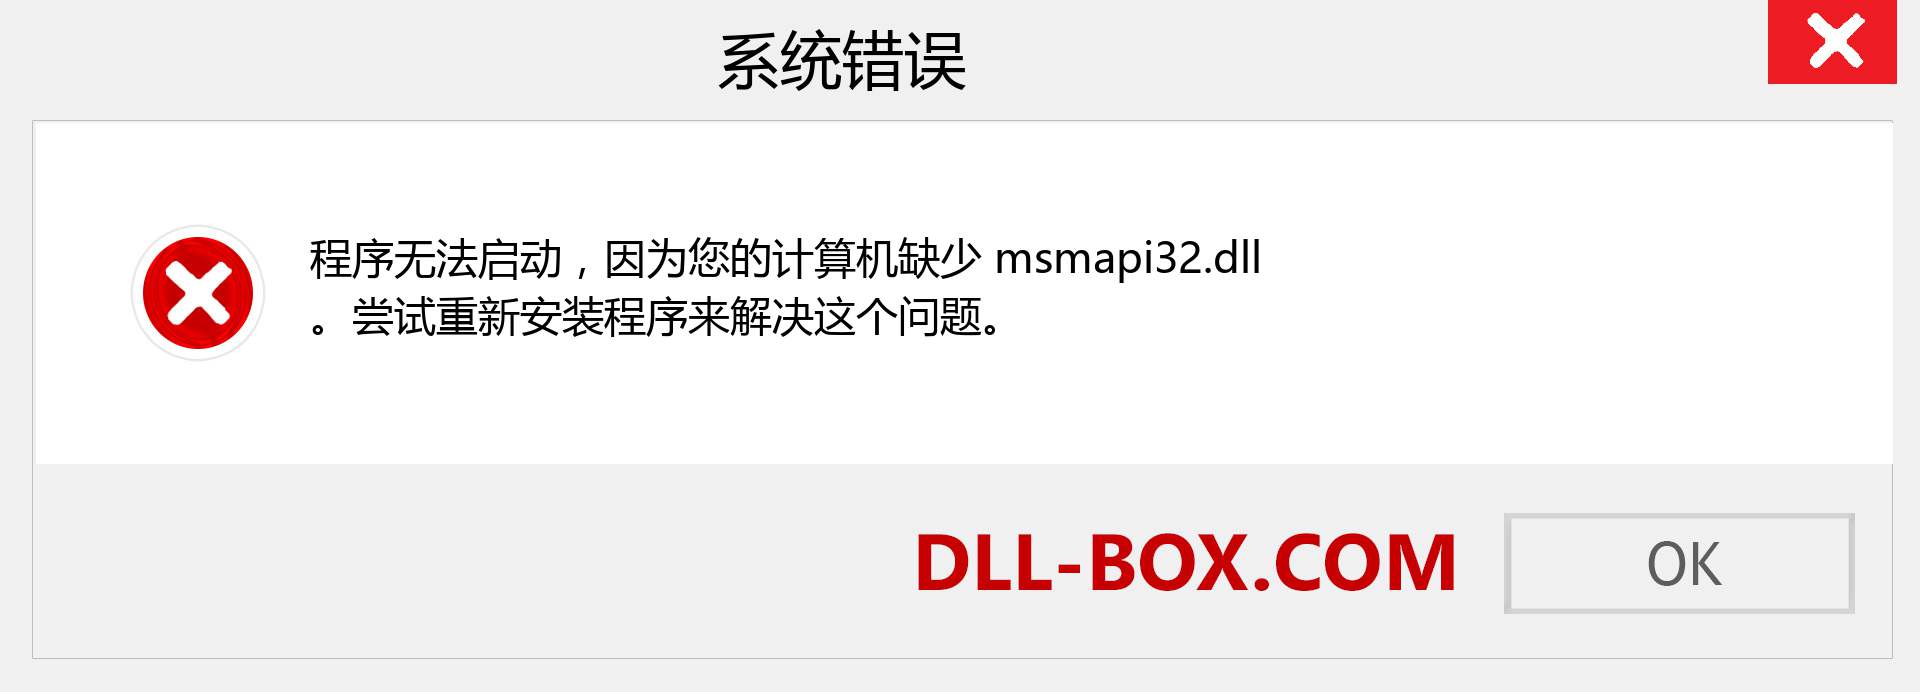 msmapi32.dll 文件丢失？。 适用于 Windows 7、8、10 的下载 - 修复 Windows、照片、图像上的 msmapi32 dll 丢失错误